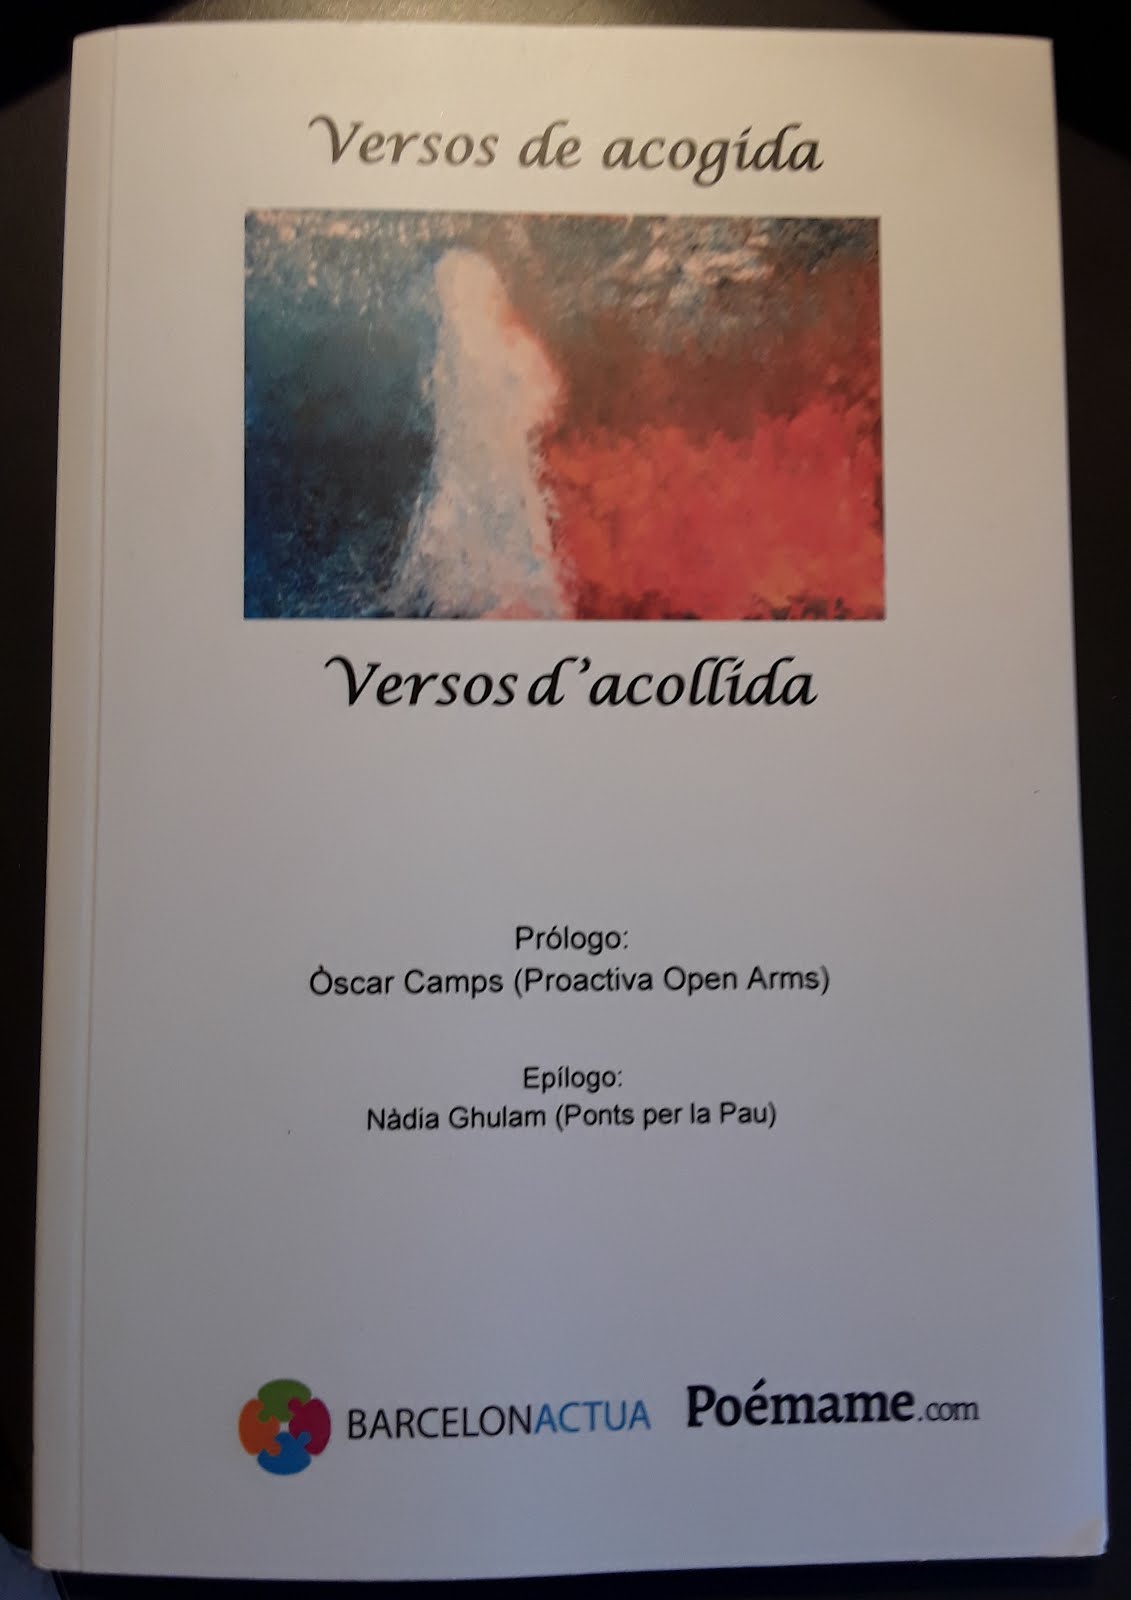 "Por la luz de sus ojos" Publicado en la Antología poética Versos de acogida - Versos d'acollida.